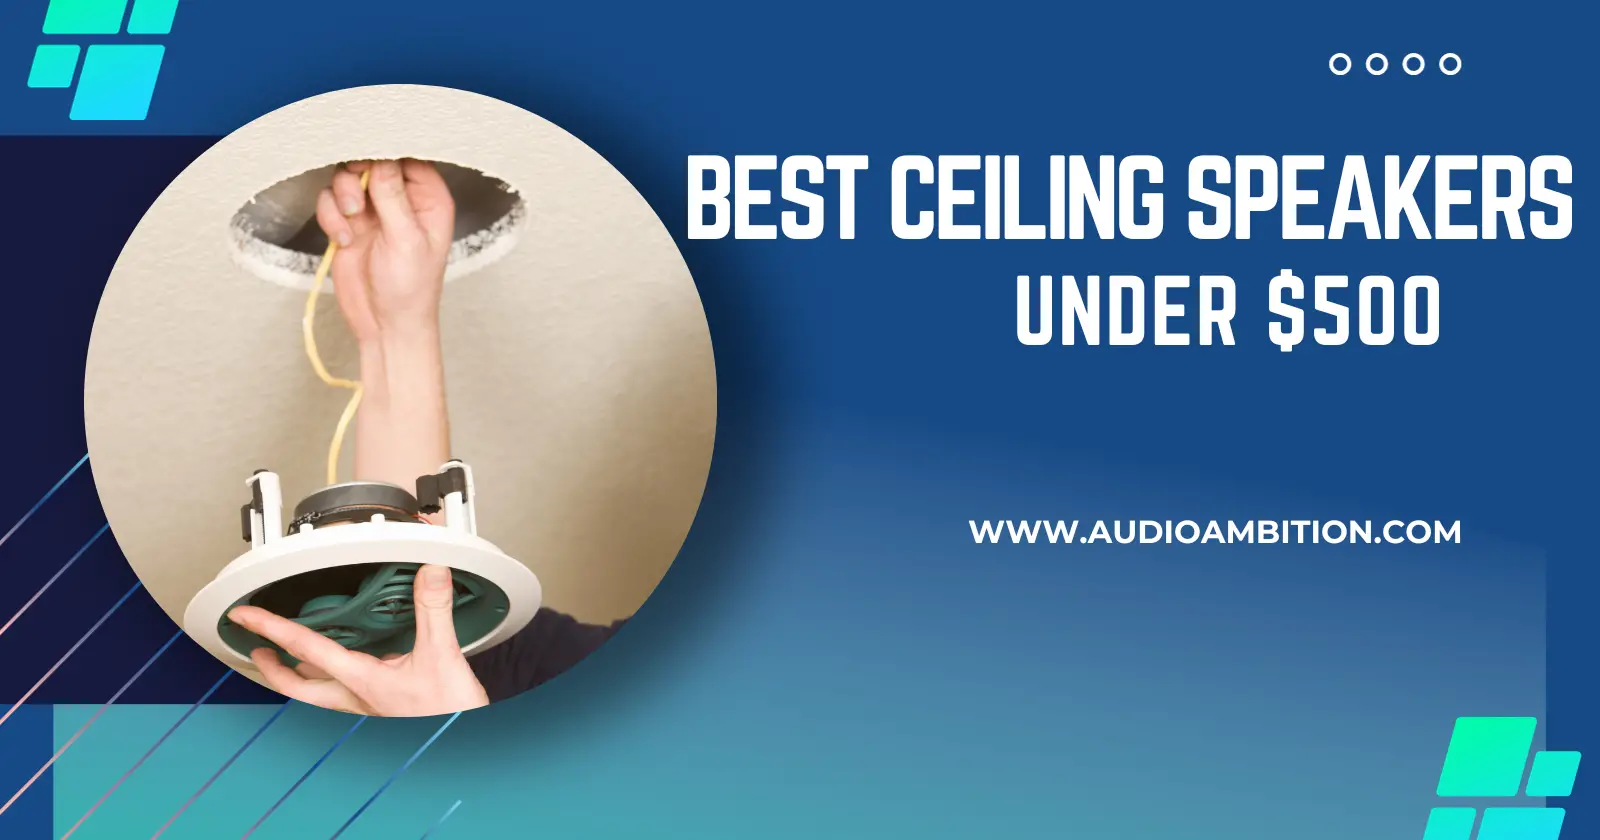 Best Ceiling Speakers Under $500